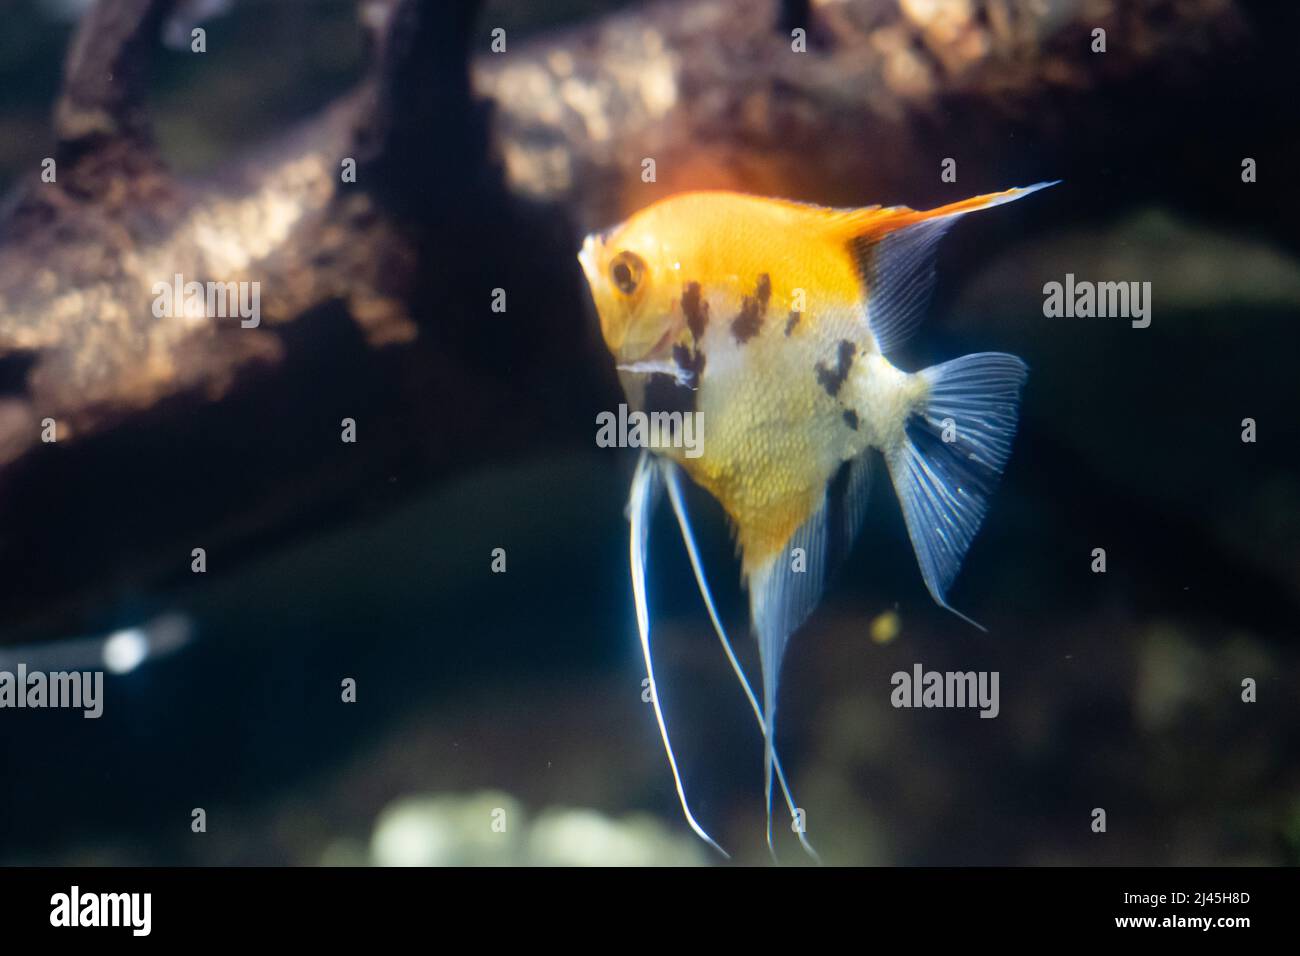 Enoplosus armatus or old wife fish in aquarium Stock Photo